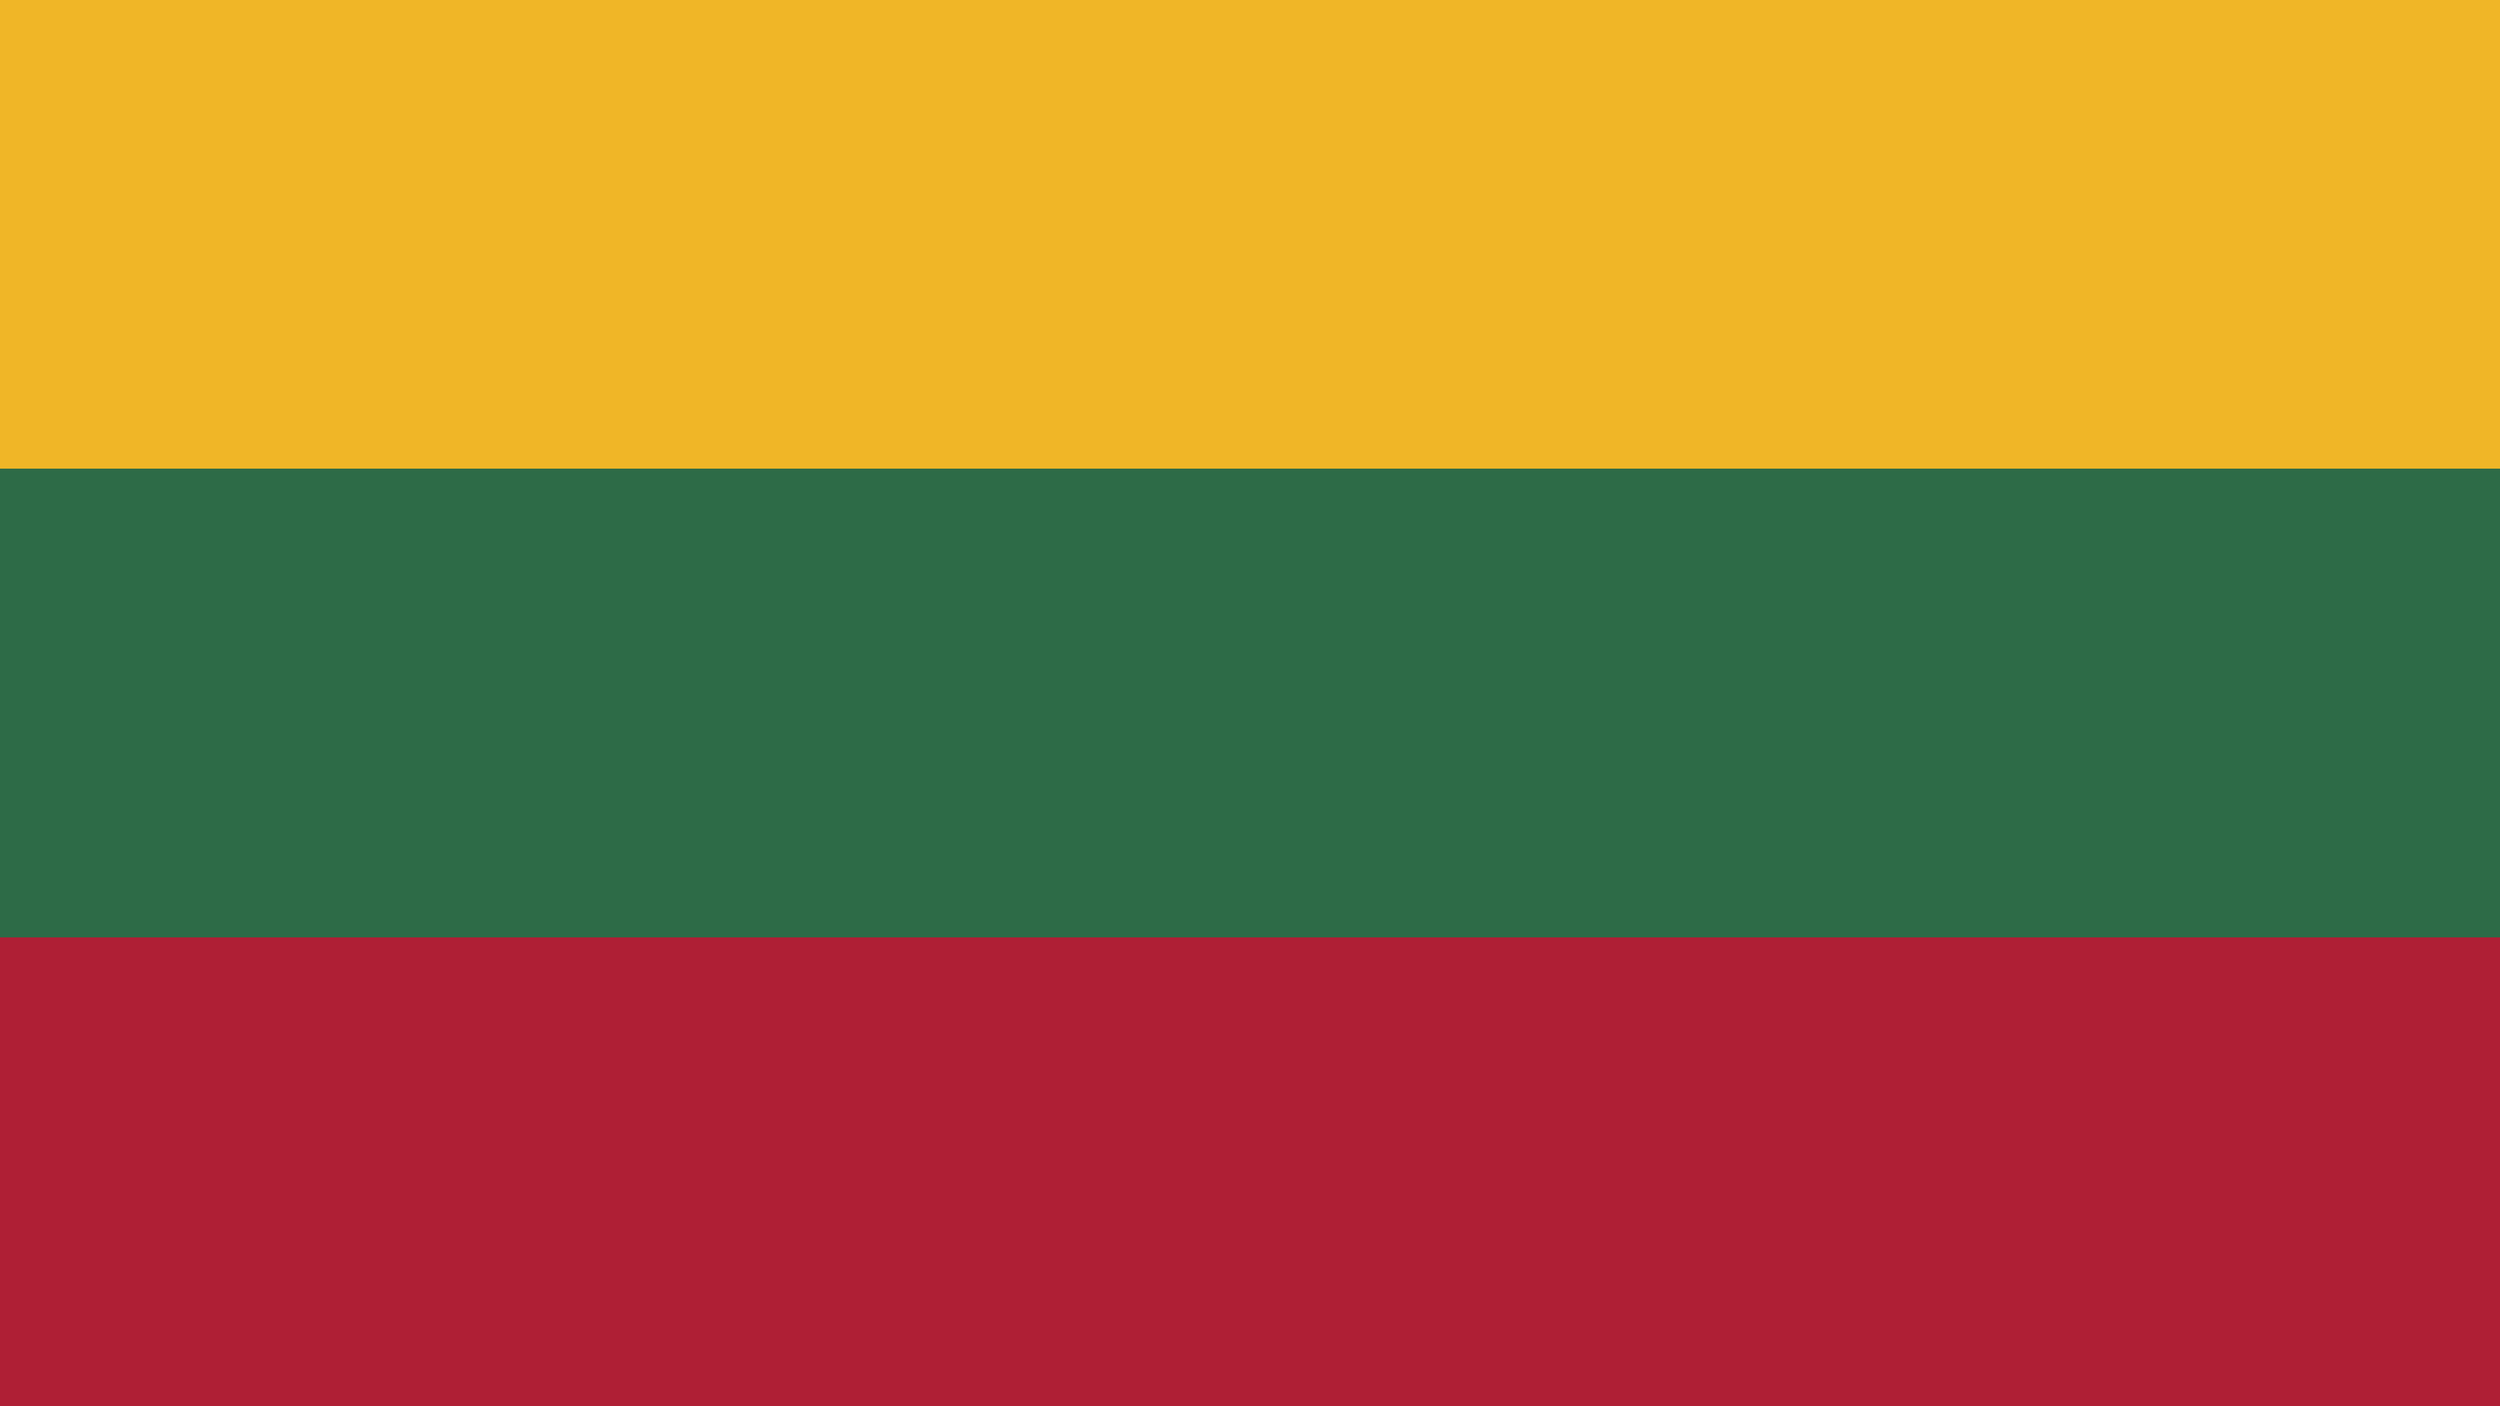 Lithuania, 1991